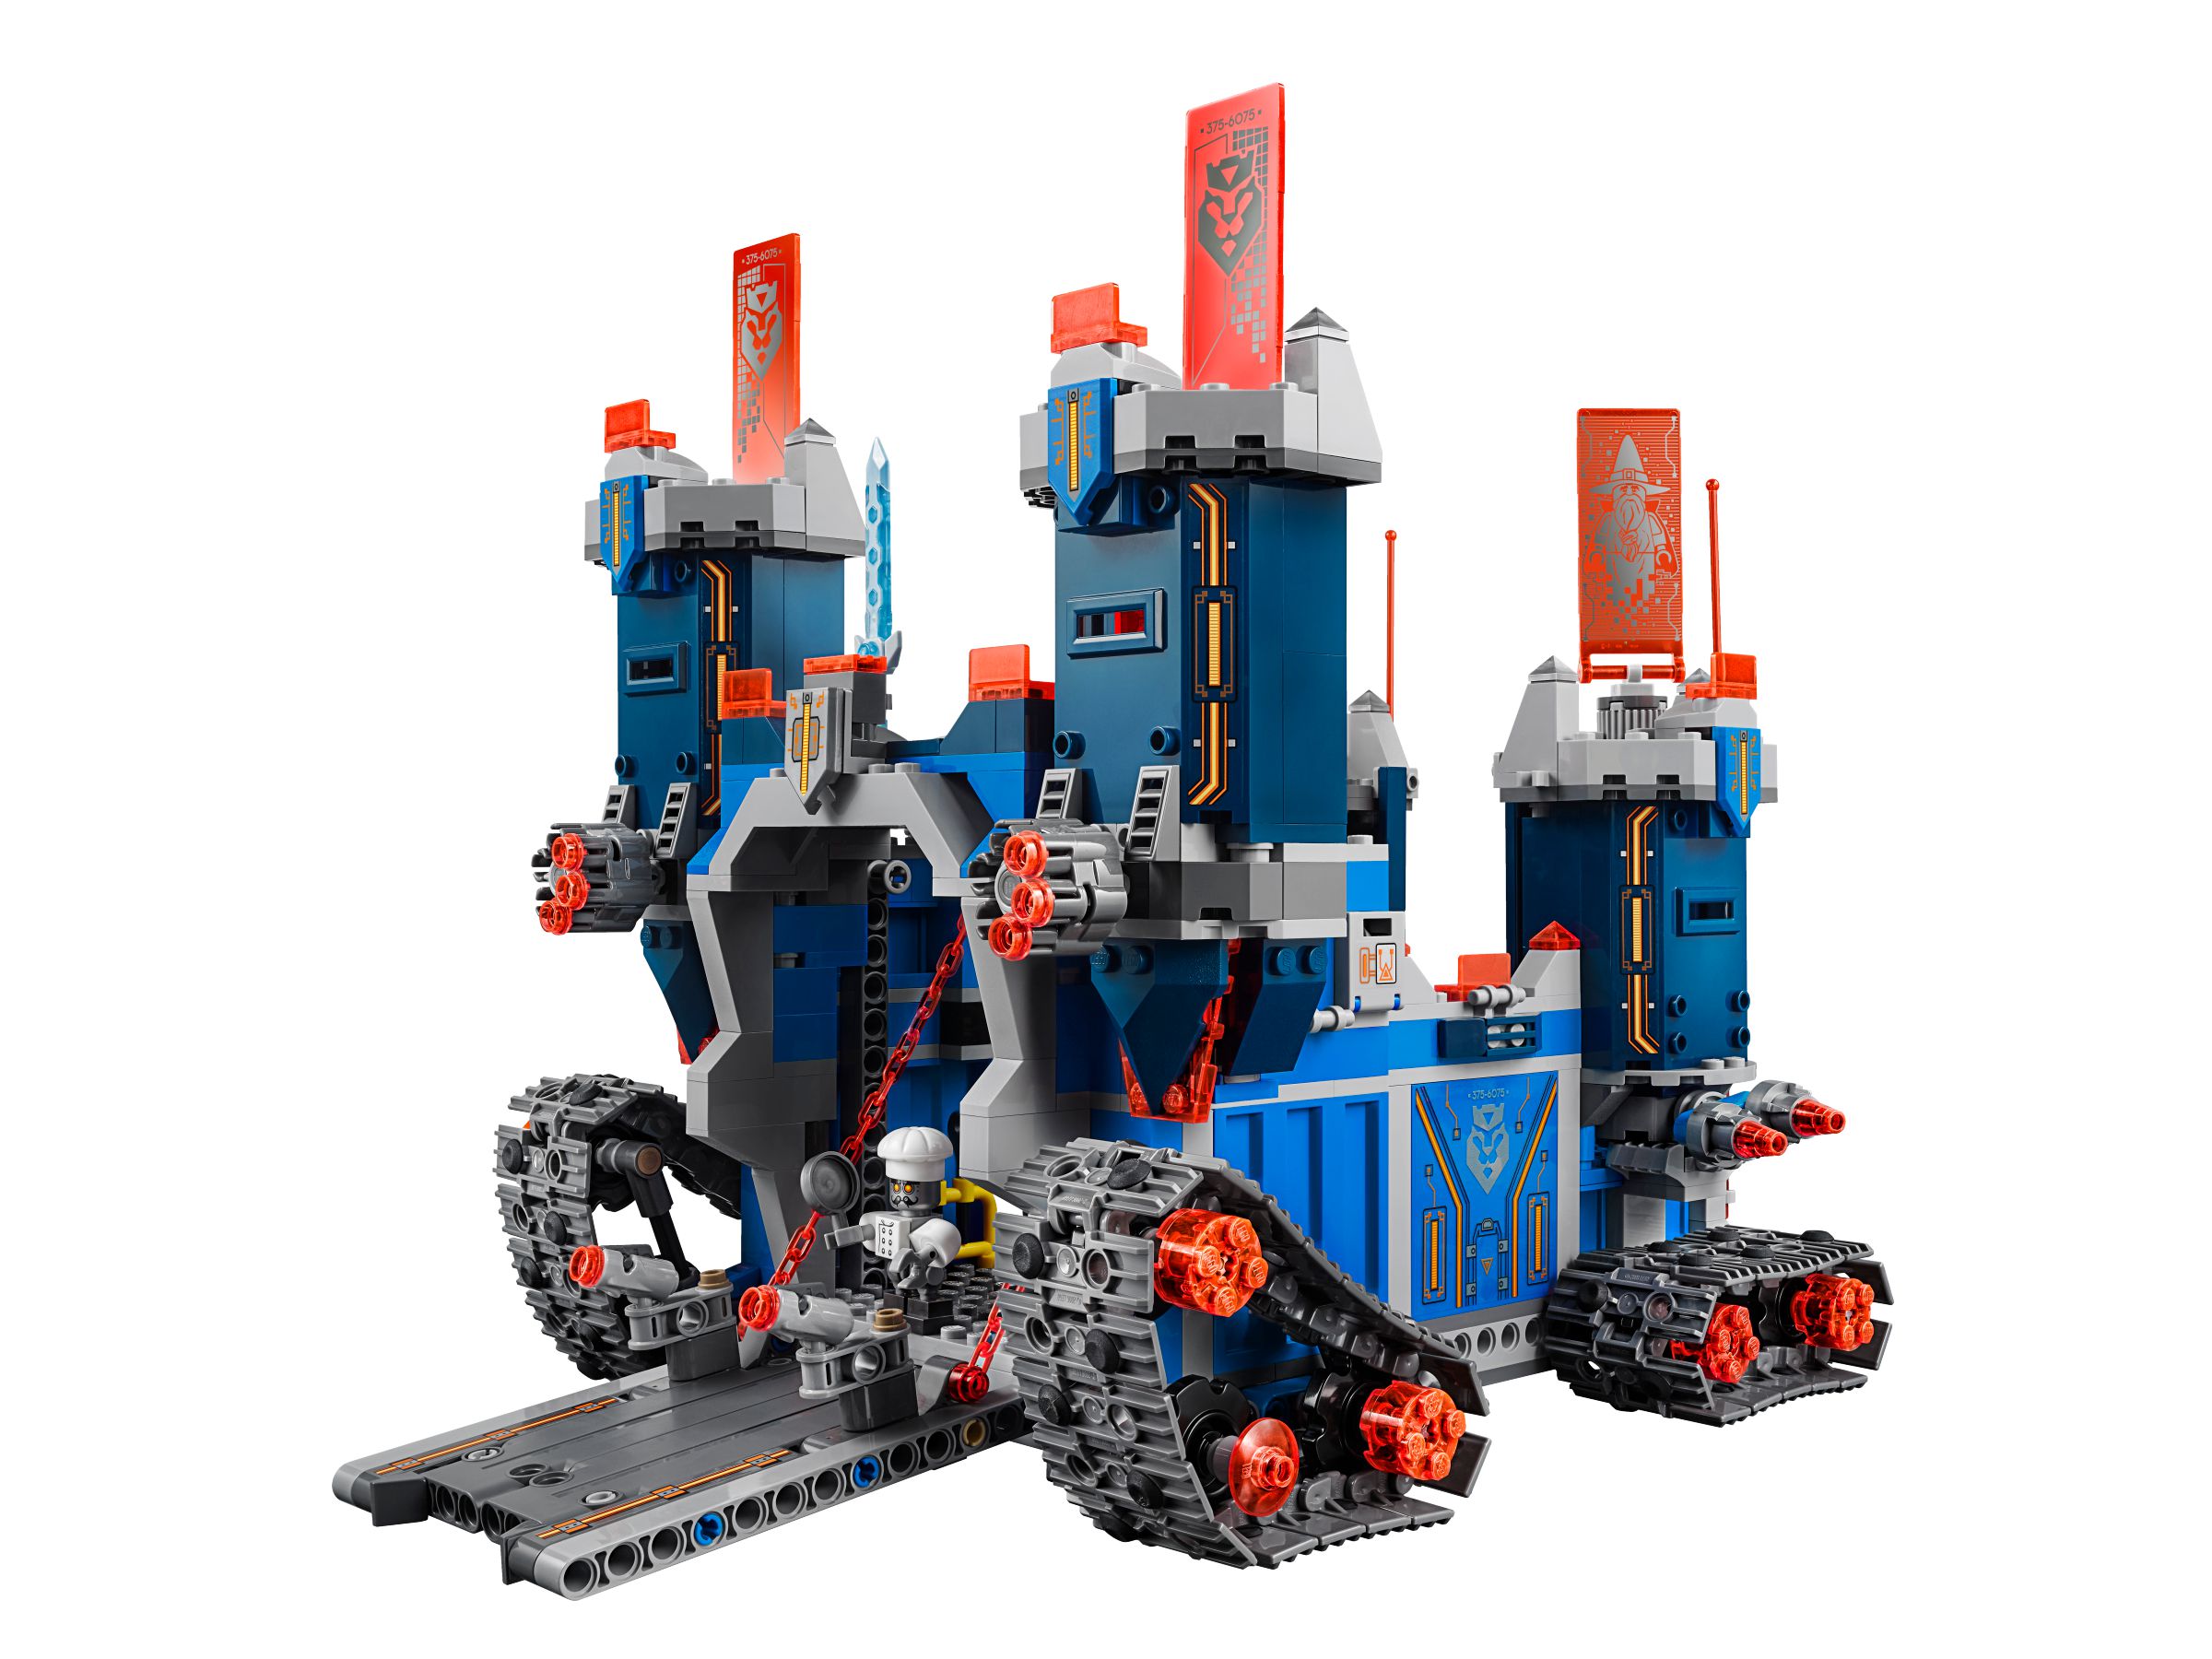 LEGO Nexo Knights 70317 Fortrex – Die rollende Festung LEGO_70317_alt2.jpg